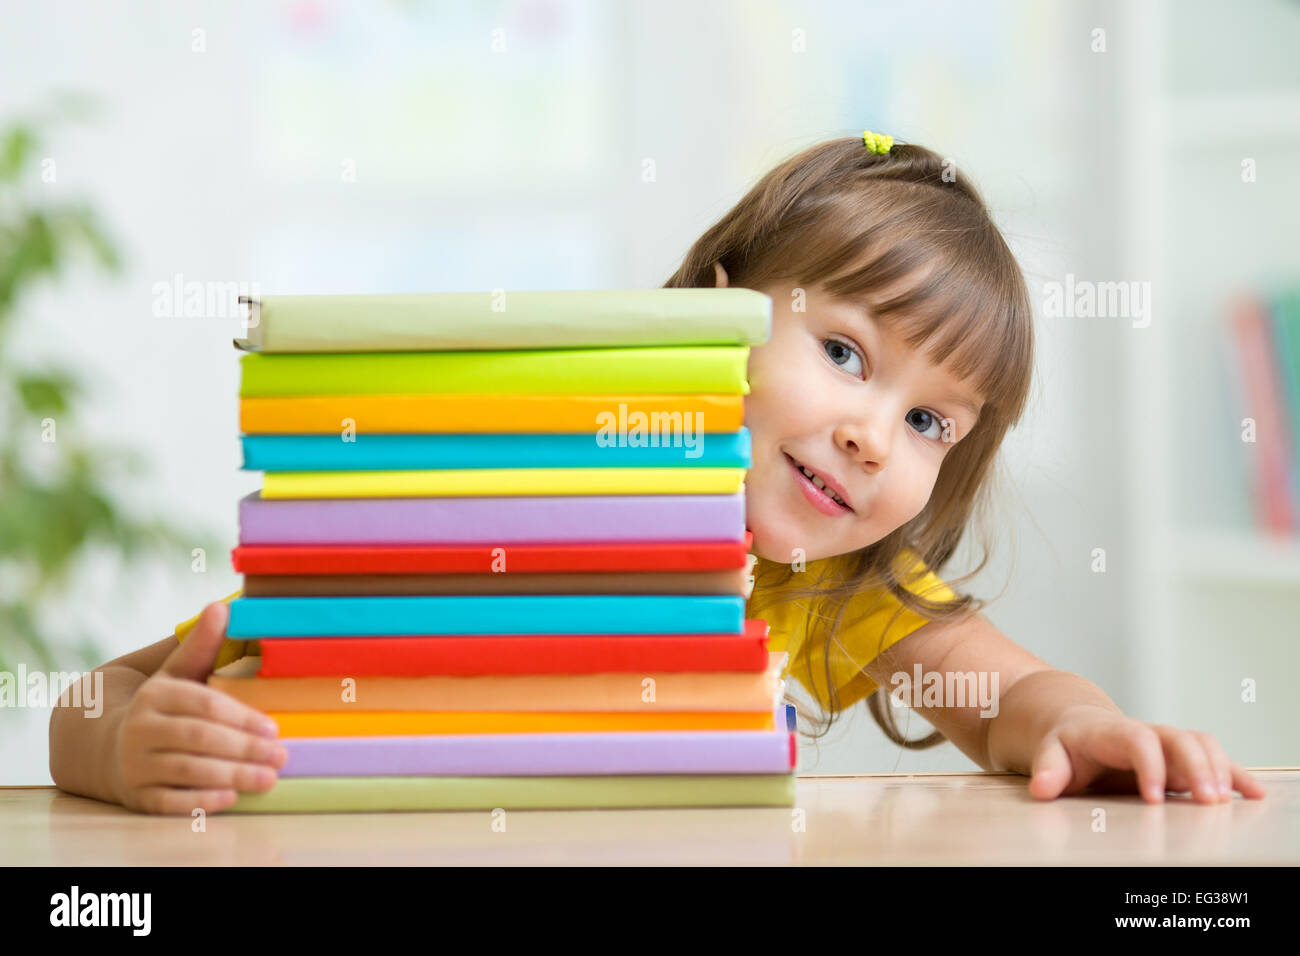 Carino kid girl preschooler con libri Foto Stock